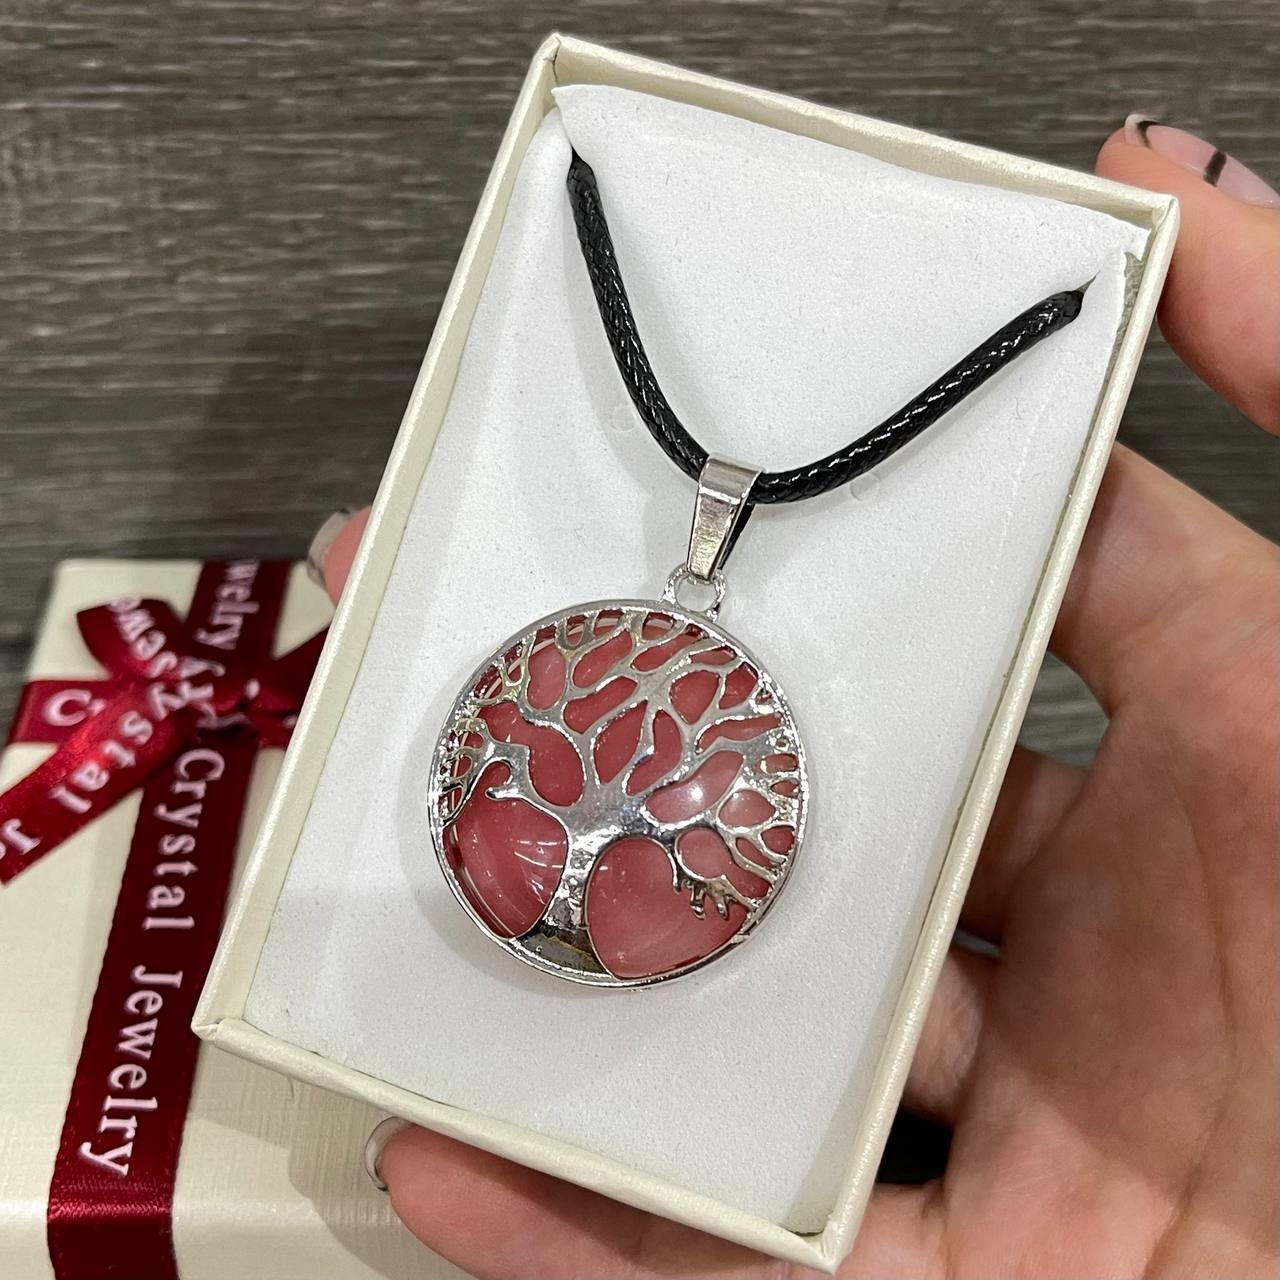 Оригінальний подарунок дівчині - натуральний камінь Рожевий кварц в оправі «Дерево життя» на шнурочку в коробочці